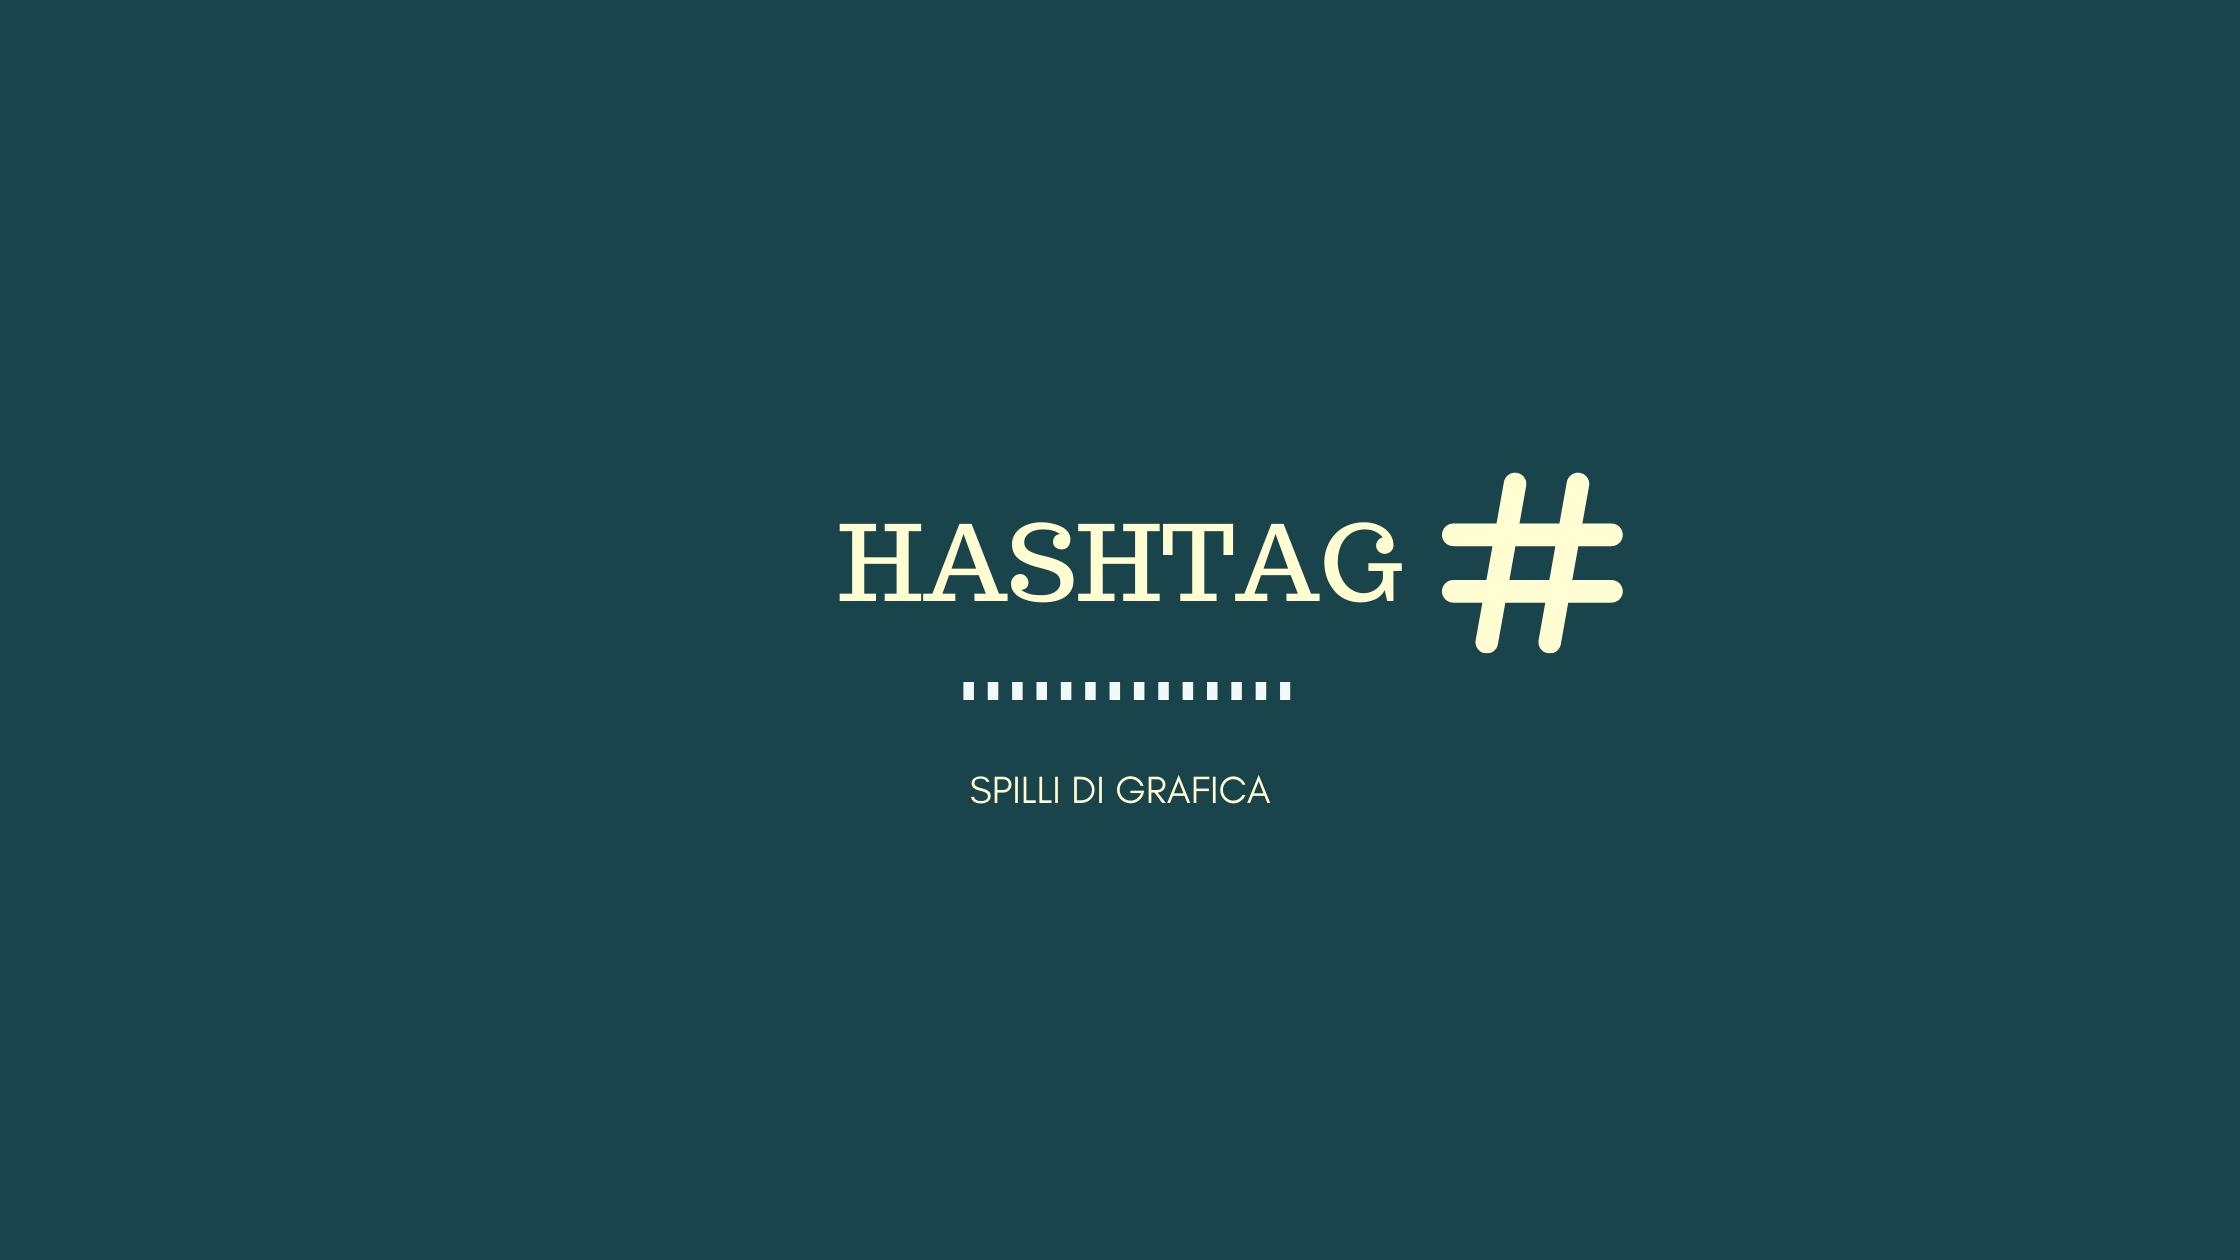 Hashtag, ecco cosa devi sapere!